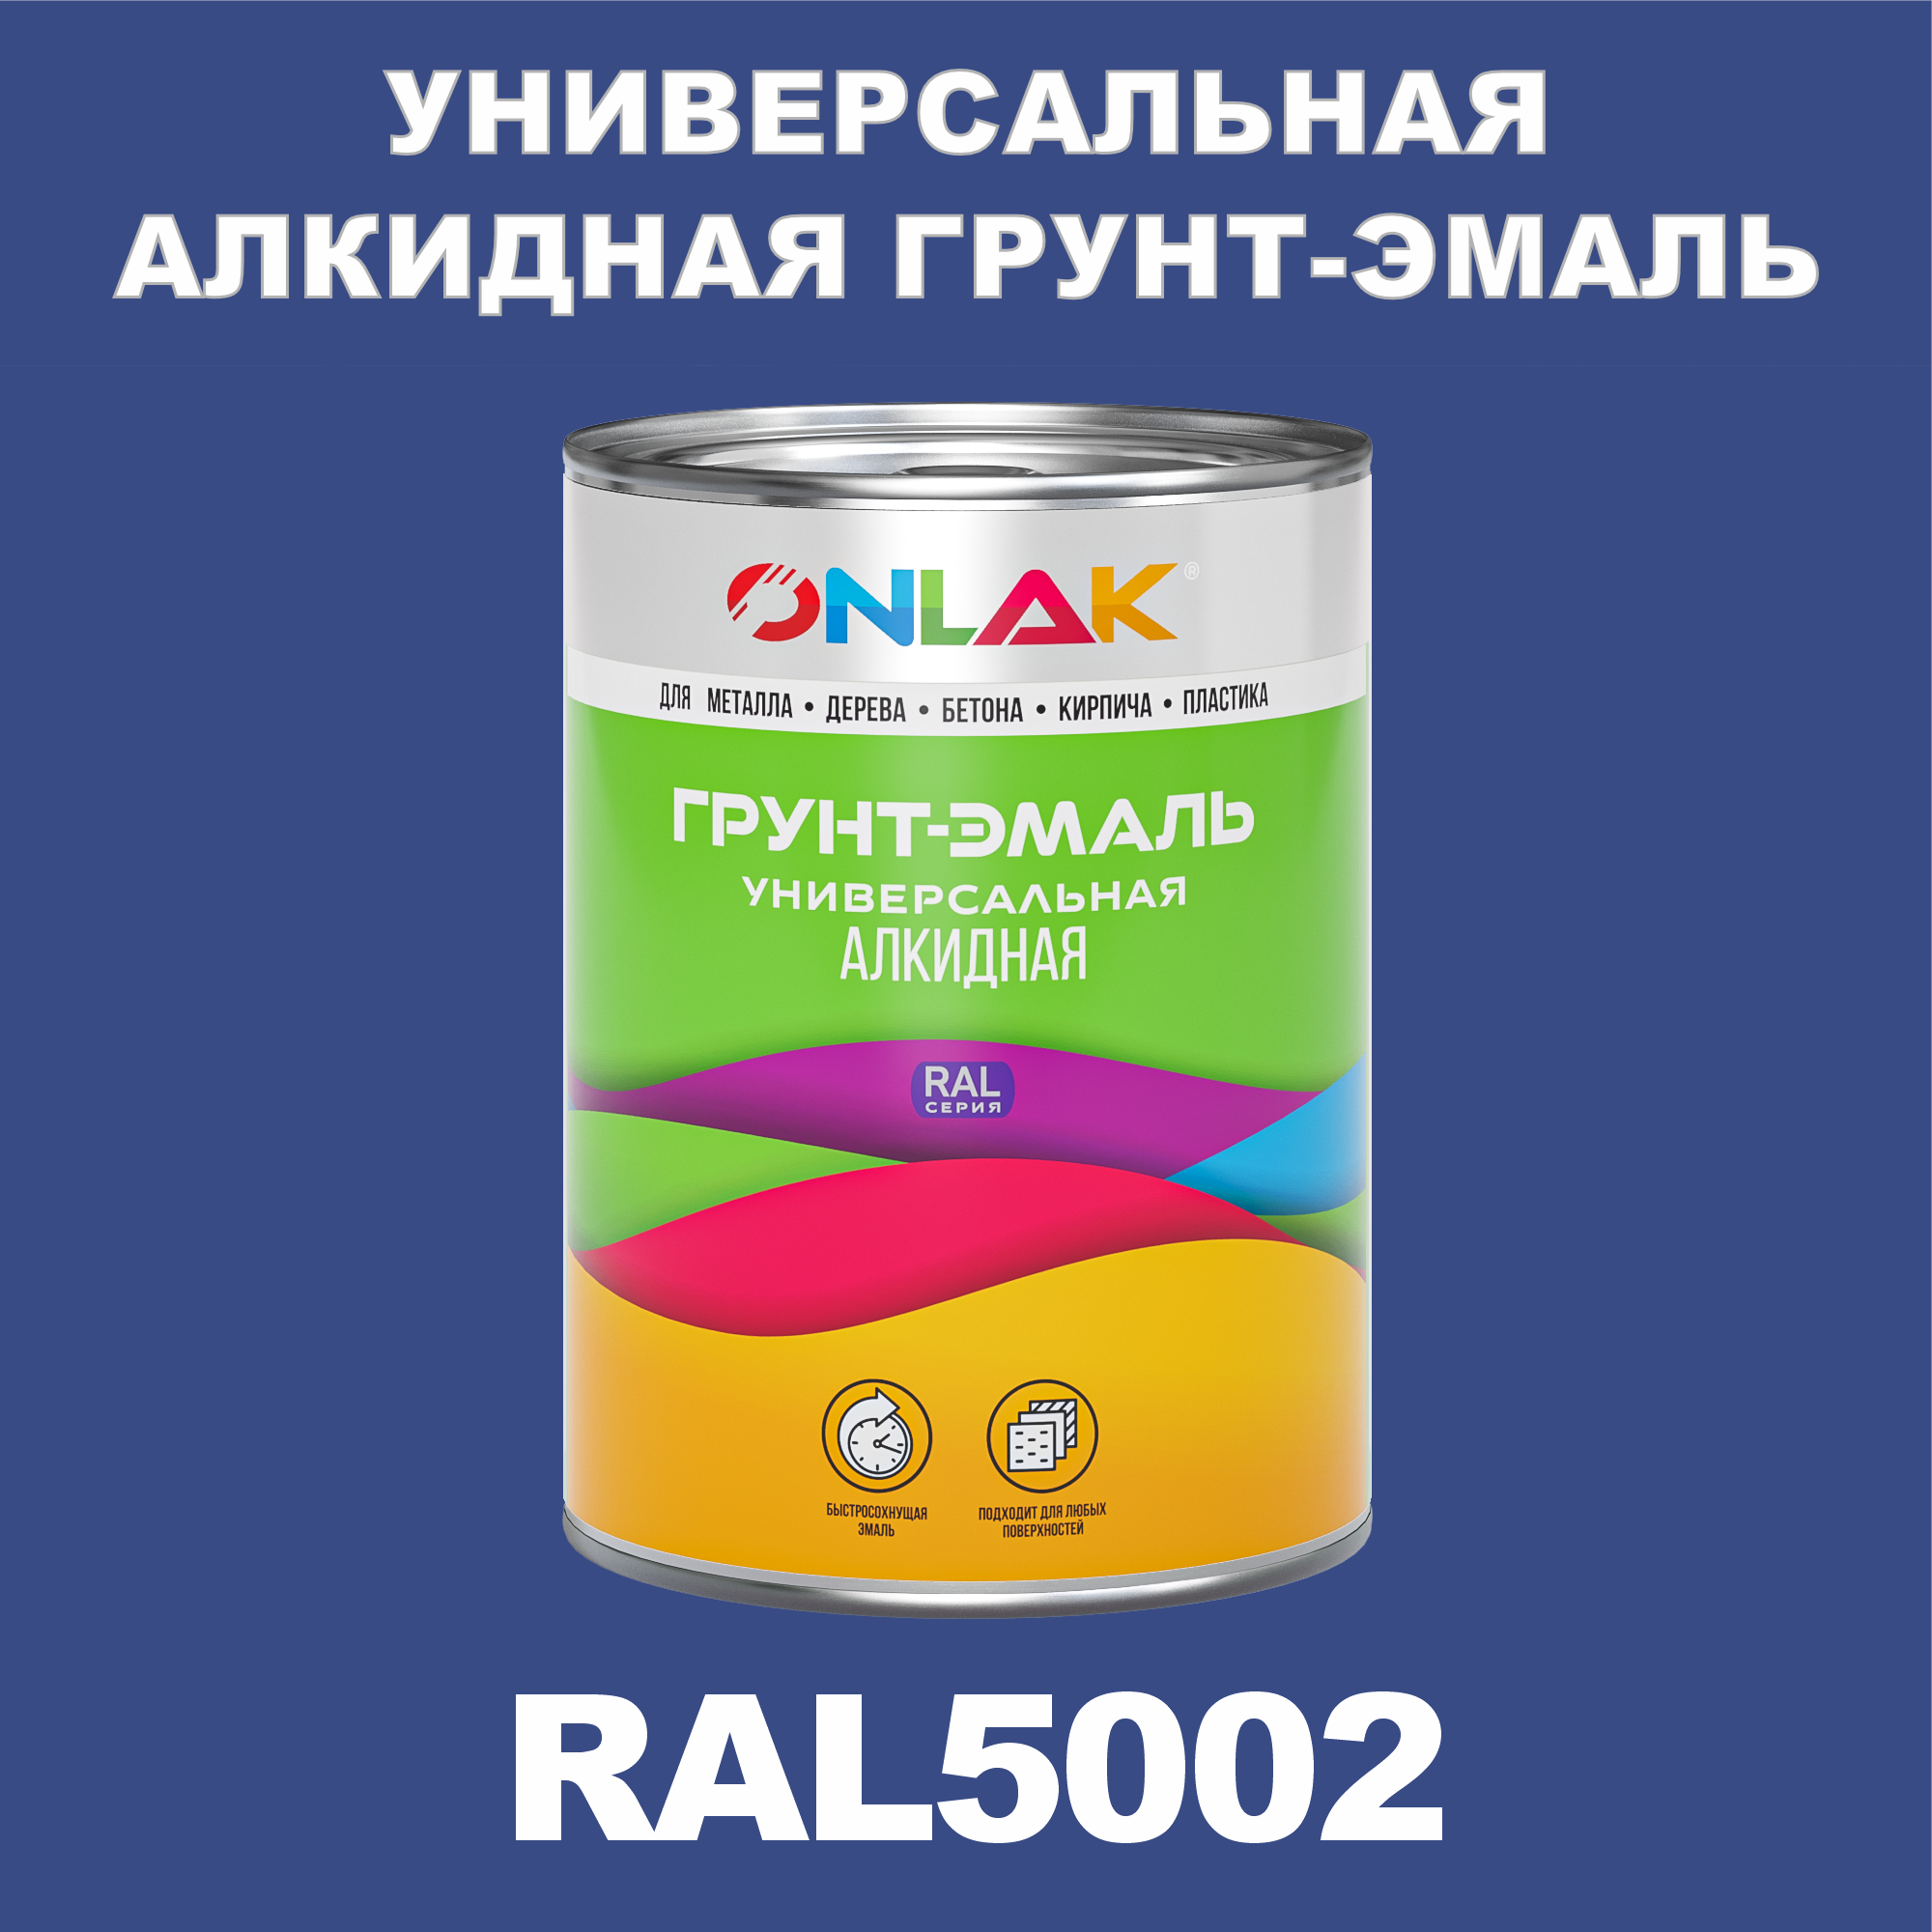 Грунт-эмаль ONLAK 1К RAL5002 антикоррозионная алкидная по металлу по ржавчине 1 кг грунт эмаль ореол титан по ржавчине алкидная шоколадно коричневая ral 8017 2 7 кг